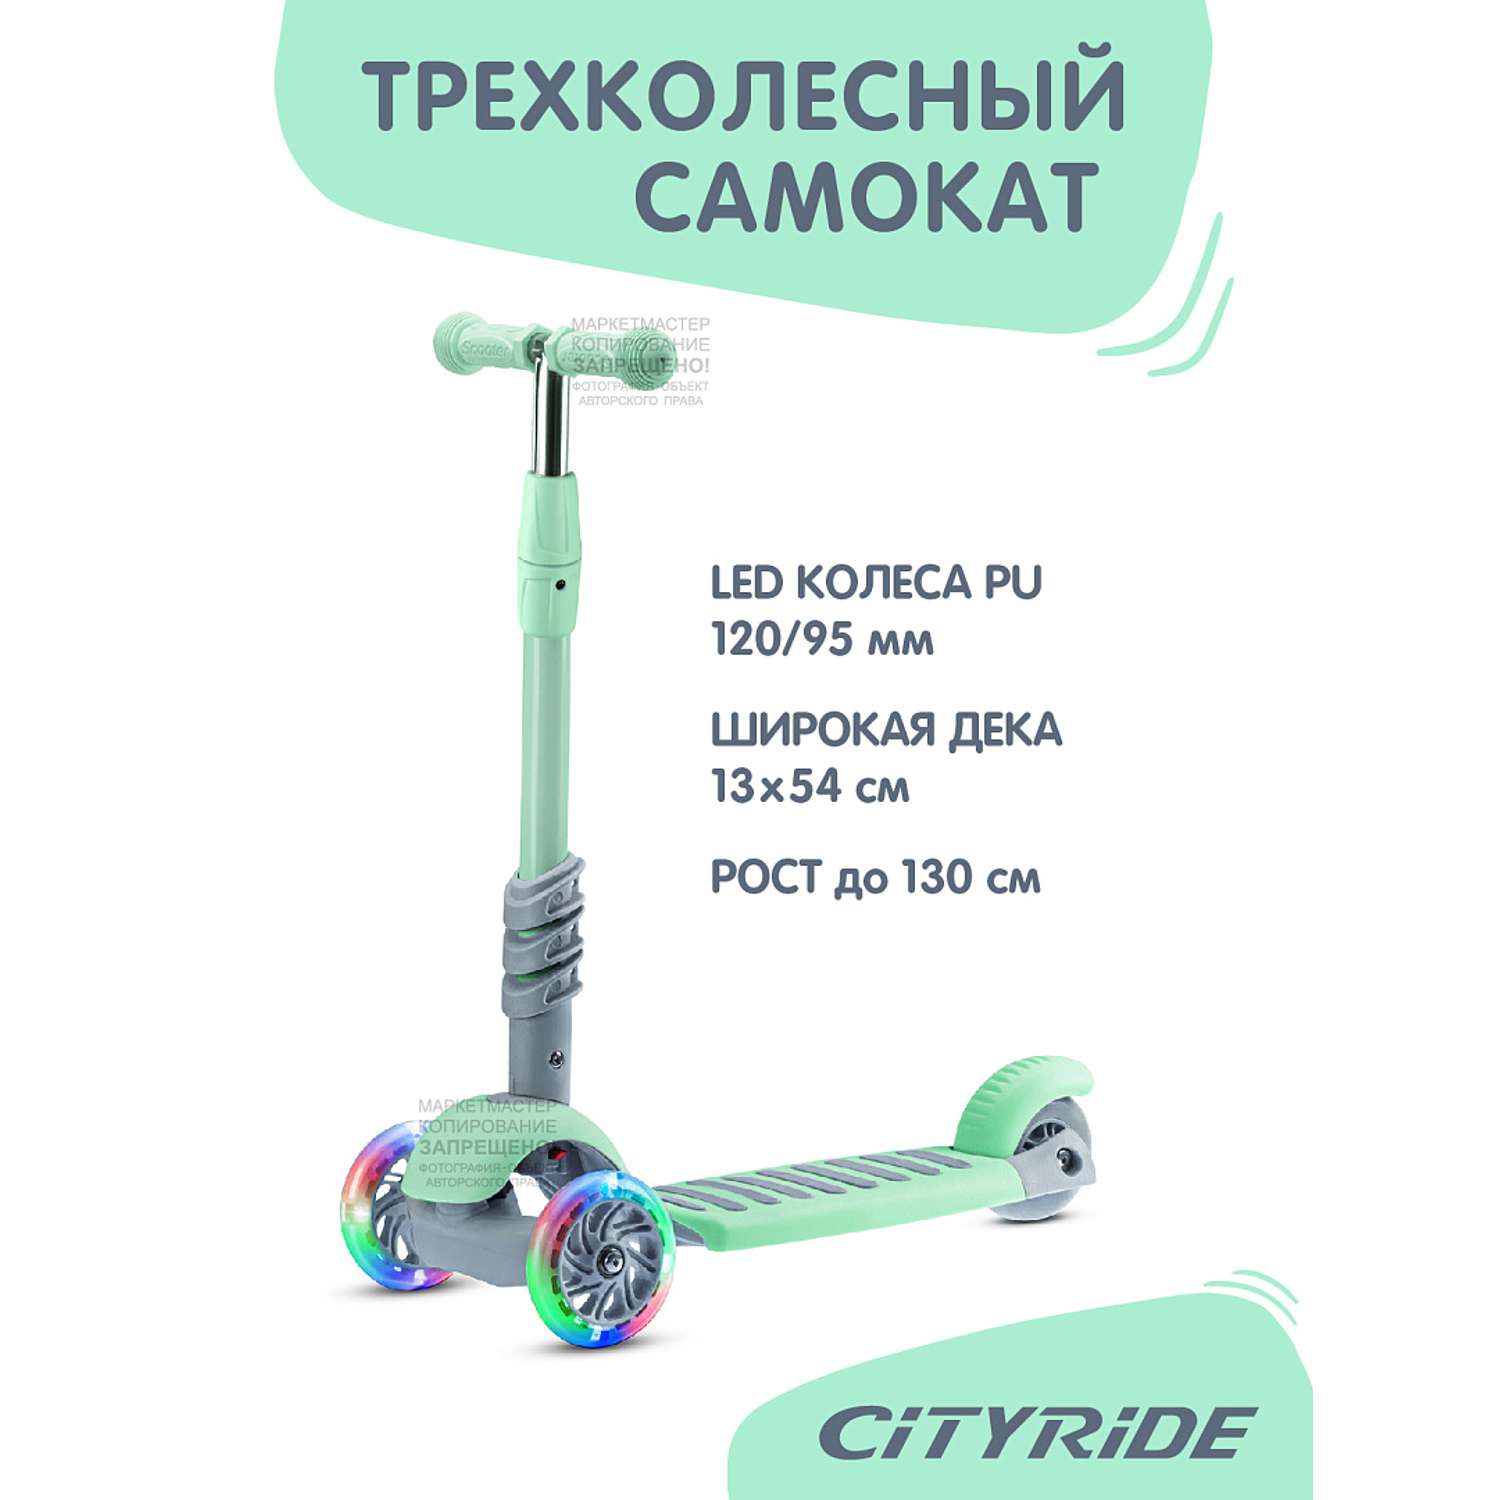 Самокат детский CITYRIDE Трехколесный 3в1 Колеса PU 120/95 передние LED светящиеся ручка - сталь корзина - фото 6